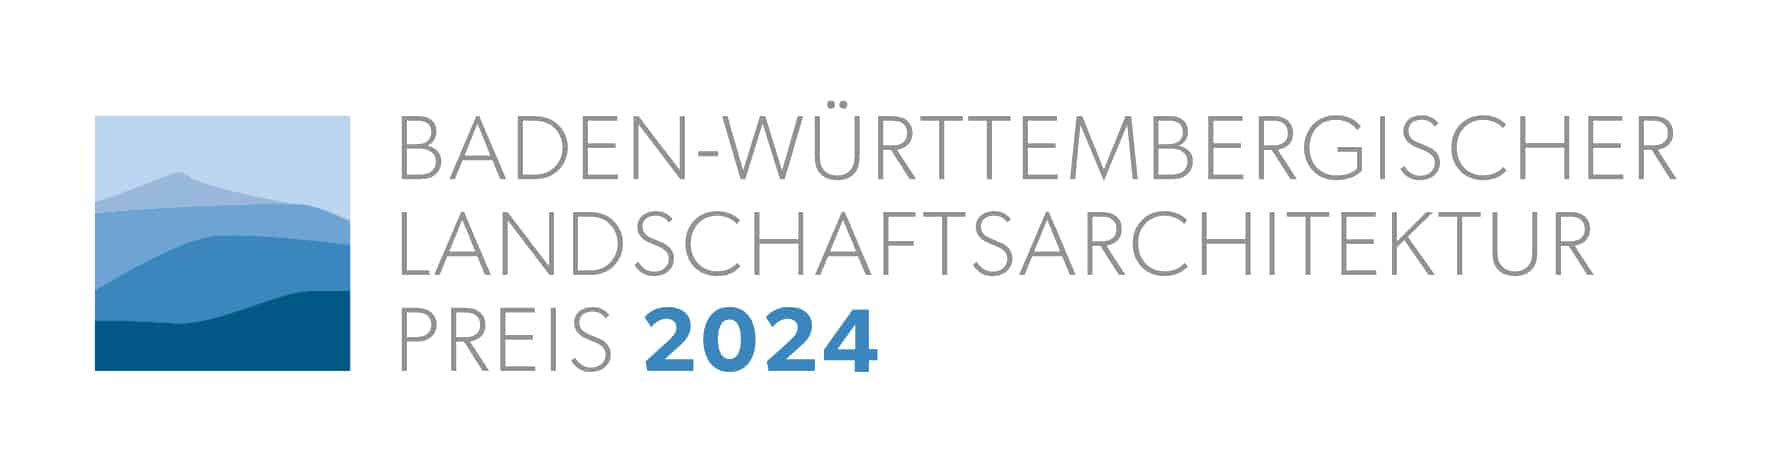 Logo zum "Baden-Württembergischen Landschaftsarchitektur-Preis 2024“. Credits: Bund Deutscher Landschaftsarchitekt:innen bdla Landesverband Baden-Württemberg e. V.